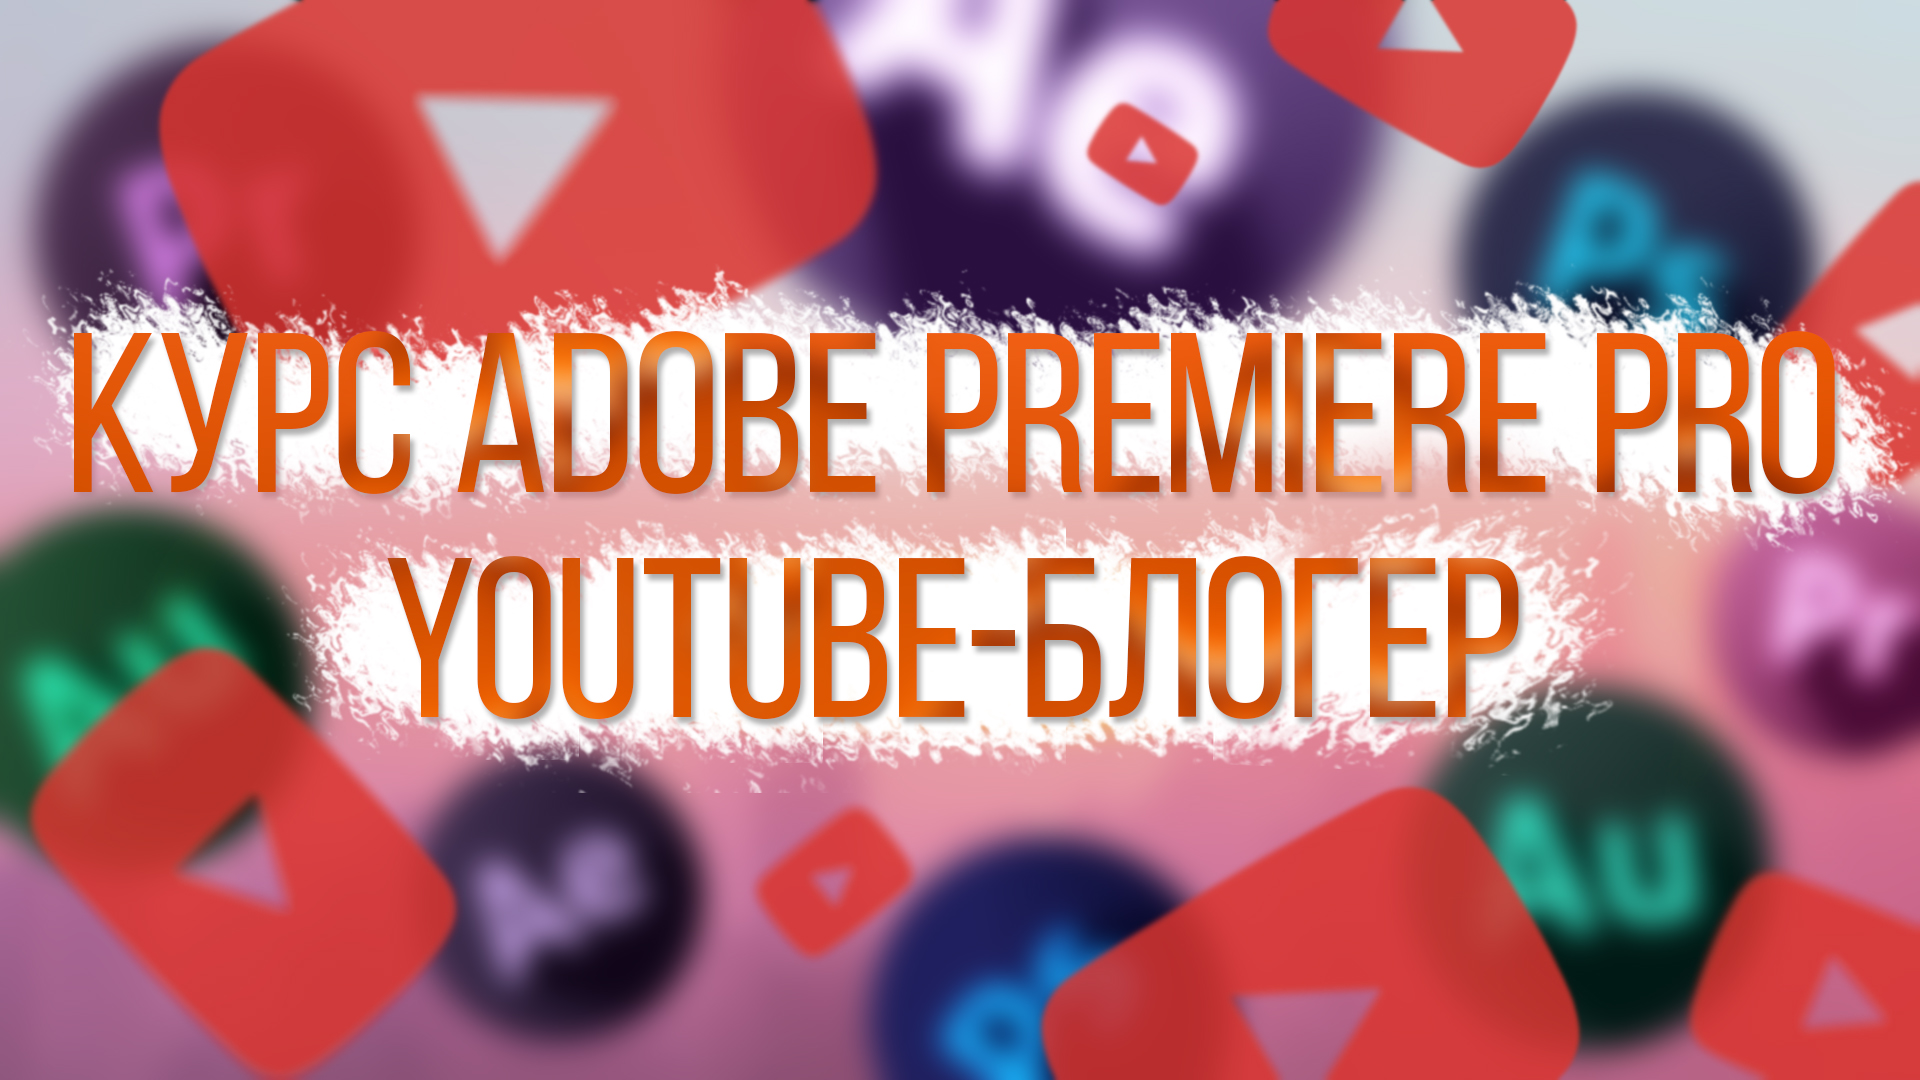 Курс по Adobe Premiere Pro (YouTube-блогер)  107449